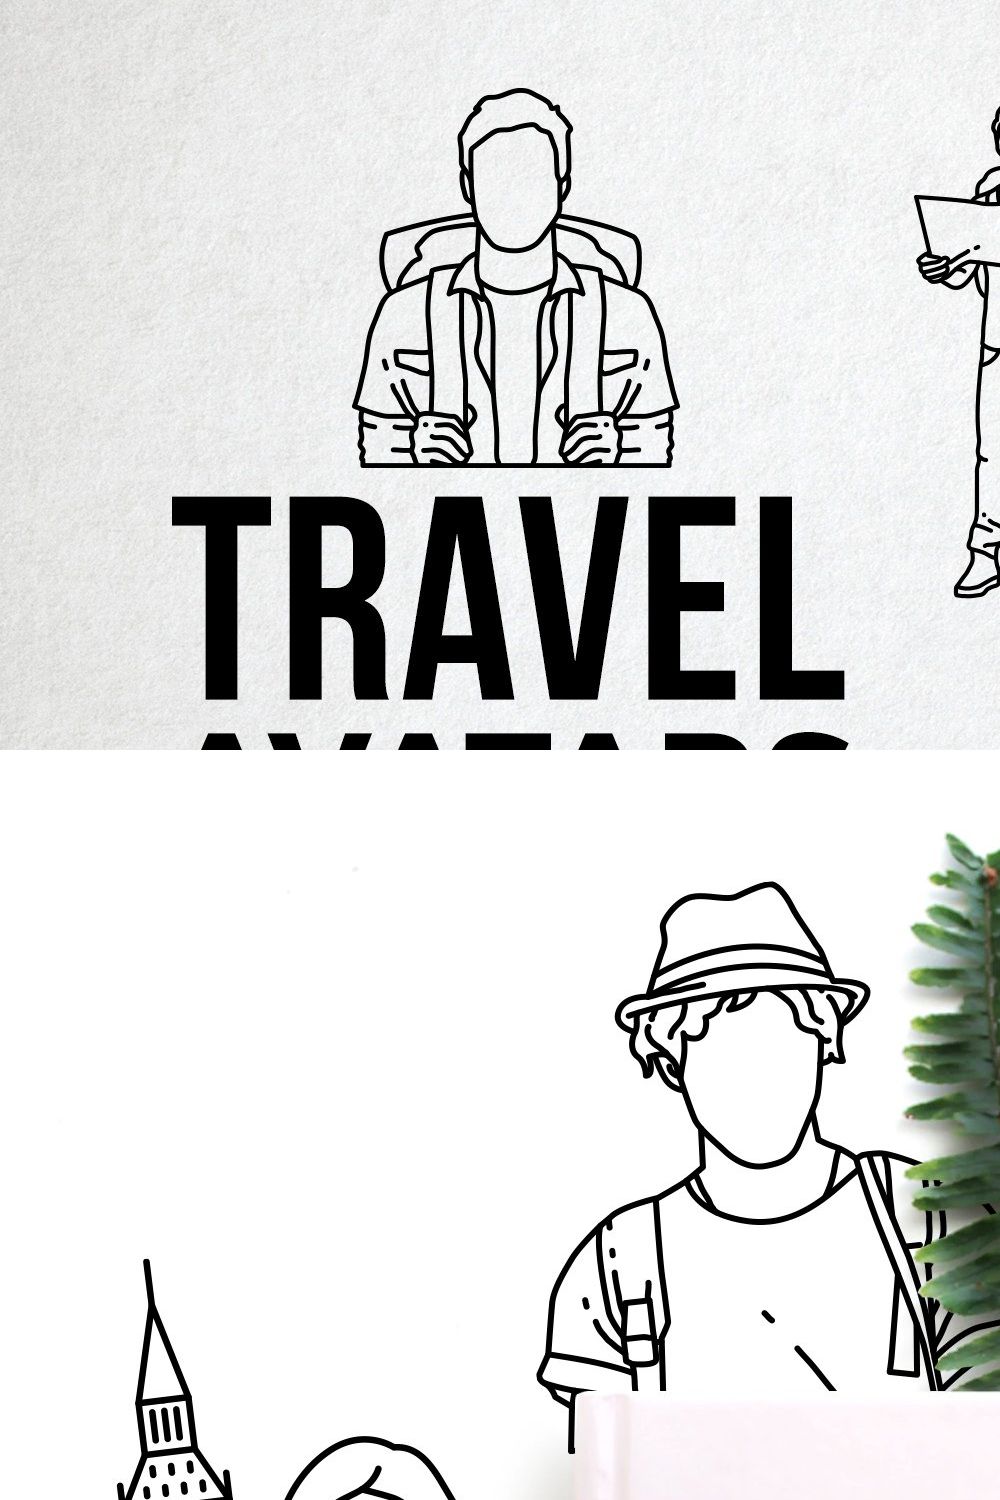 60 Travel Icons - Traveler Avatars pinterest preview image.